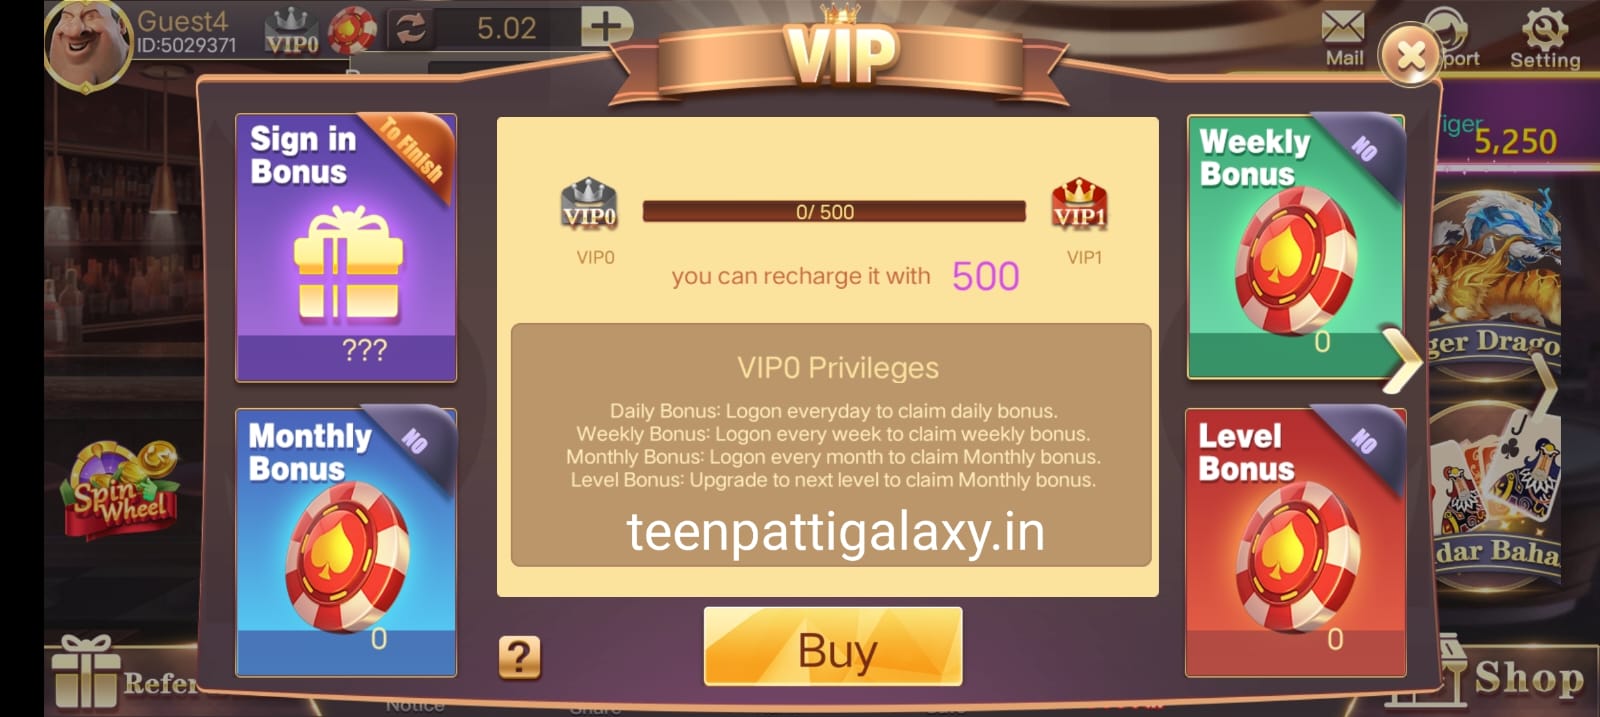 VIP Program In 3 Patti Fun Application